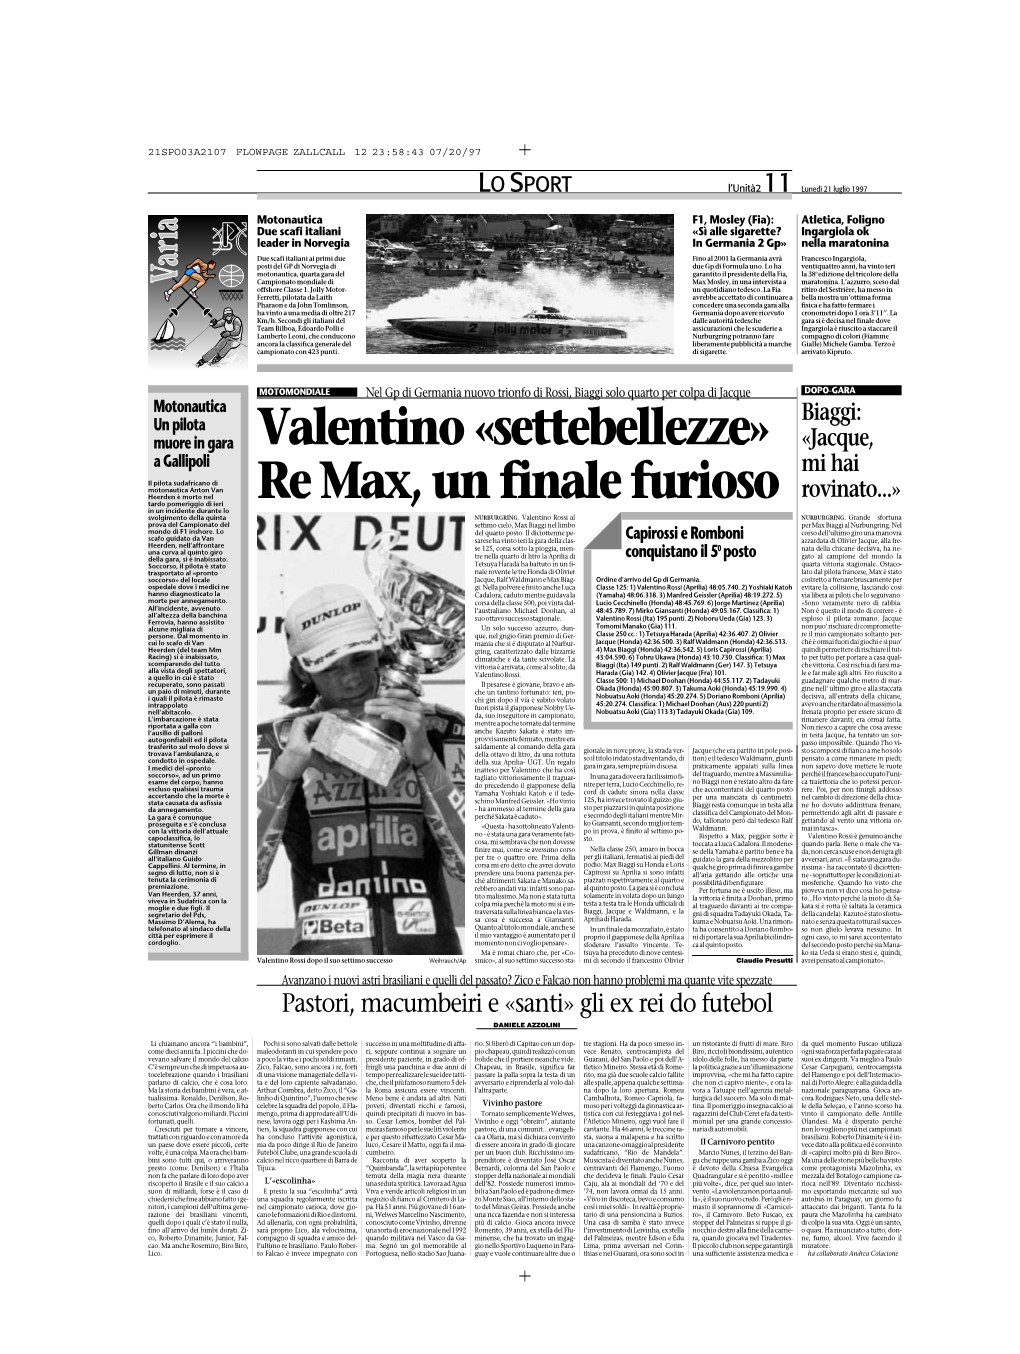 Valentino «Settebellezze» Re Max, Un Finale Furioso